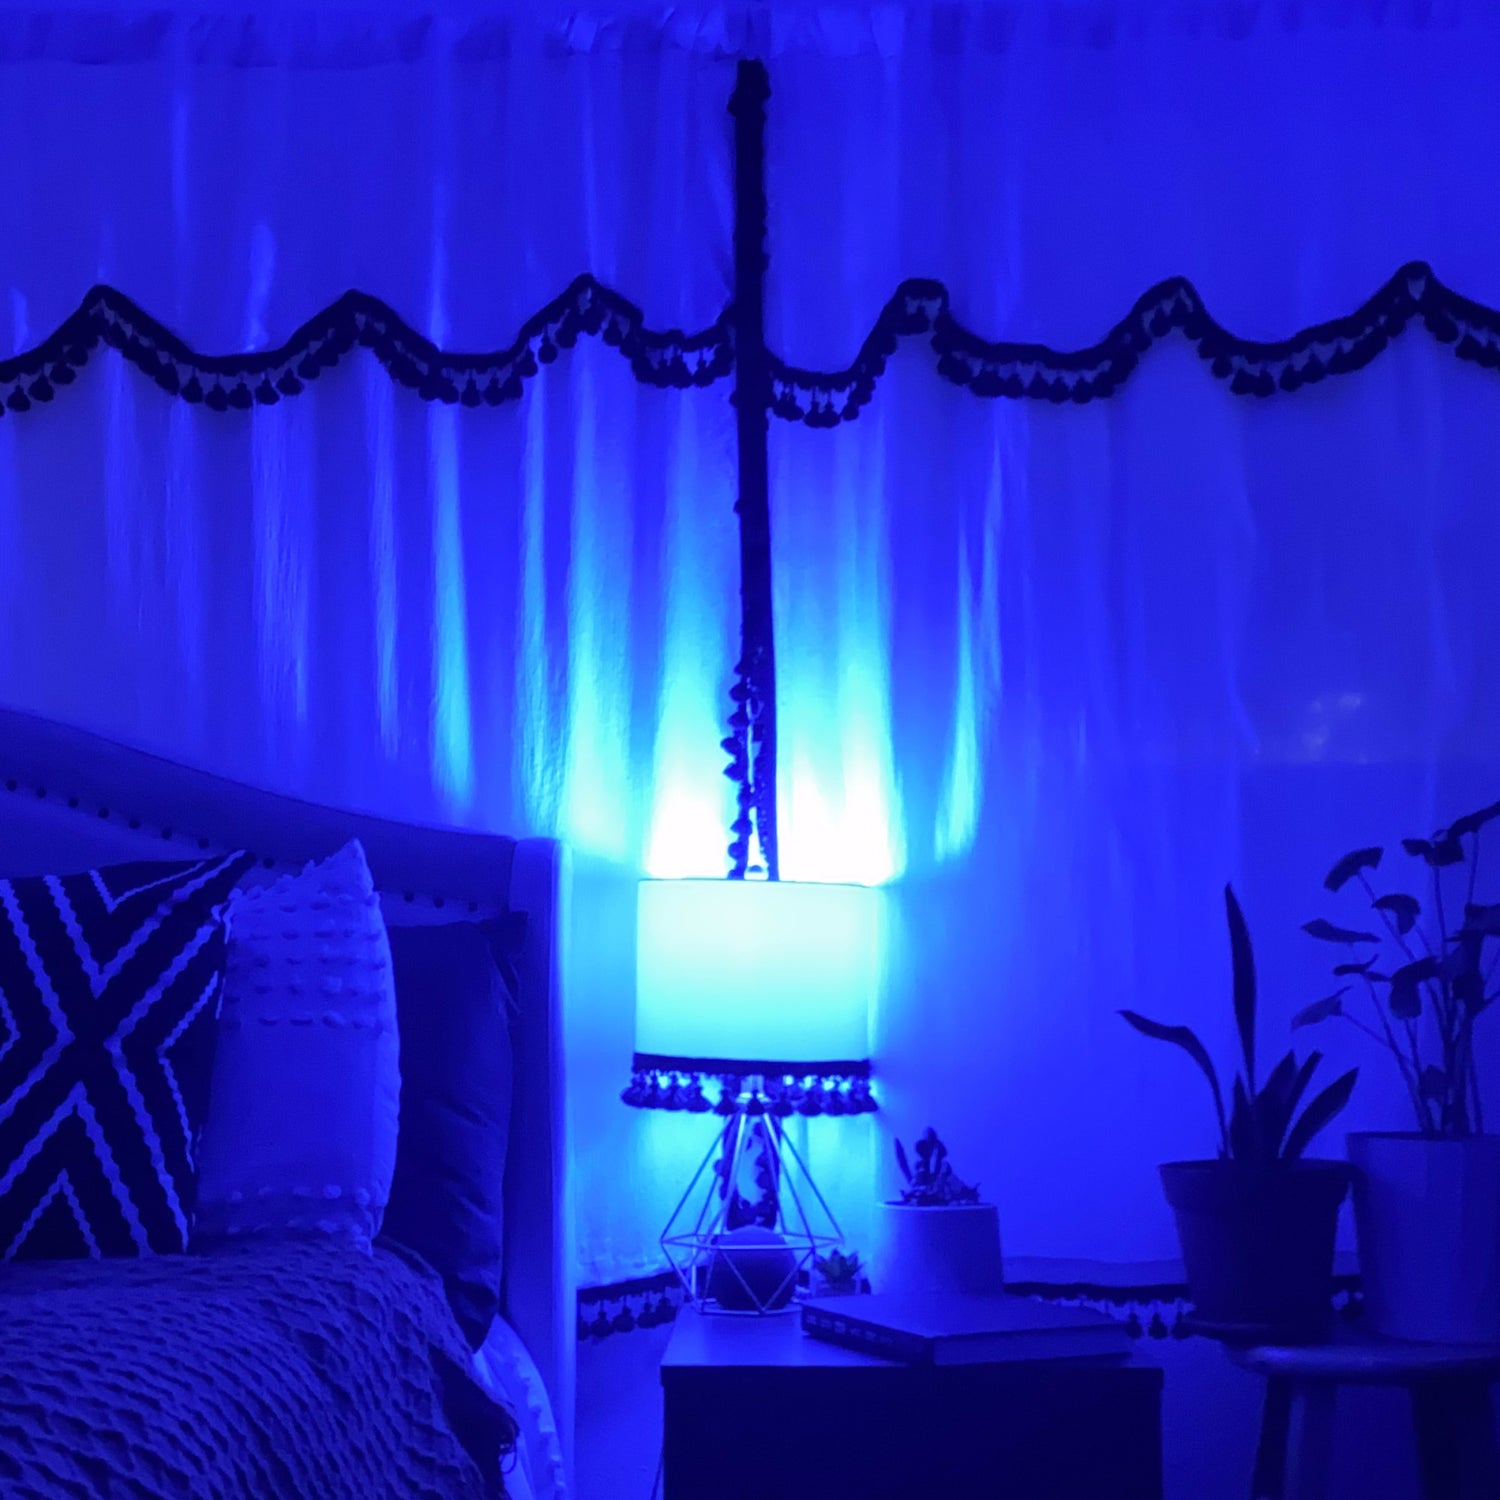 4.5W A19 Blue LED Filament Light Bulb